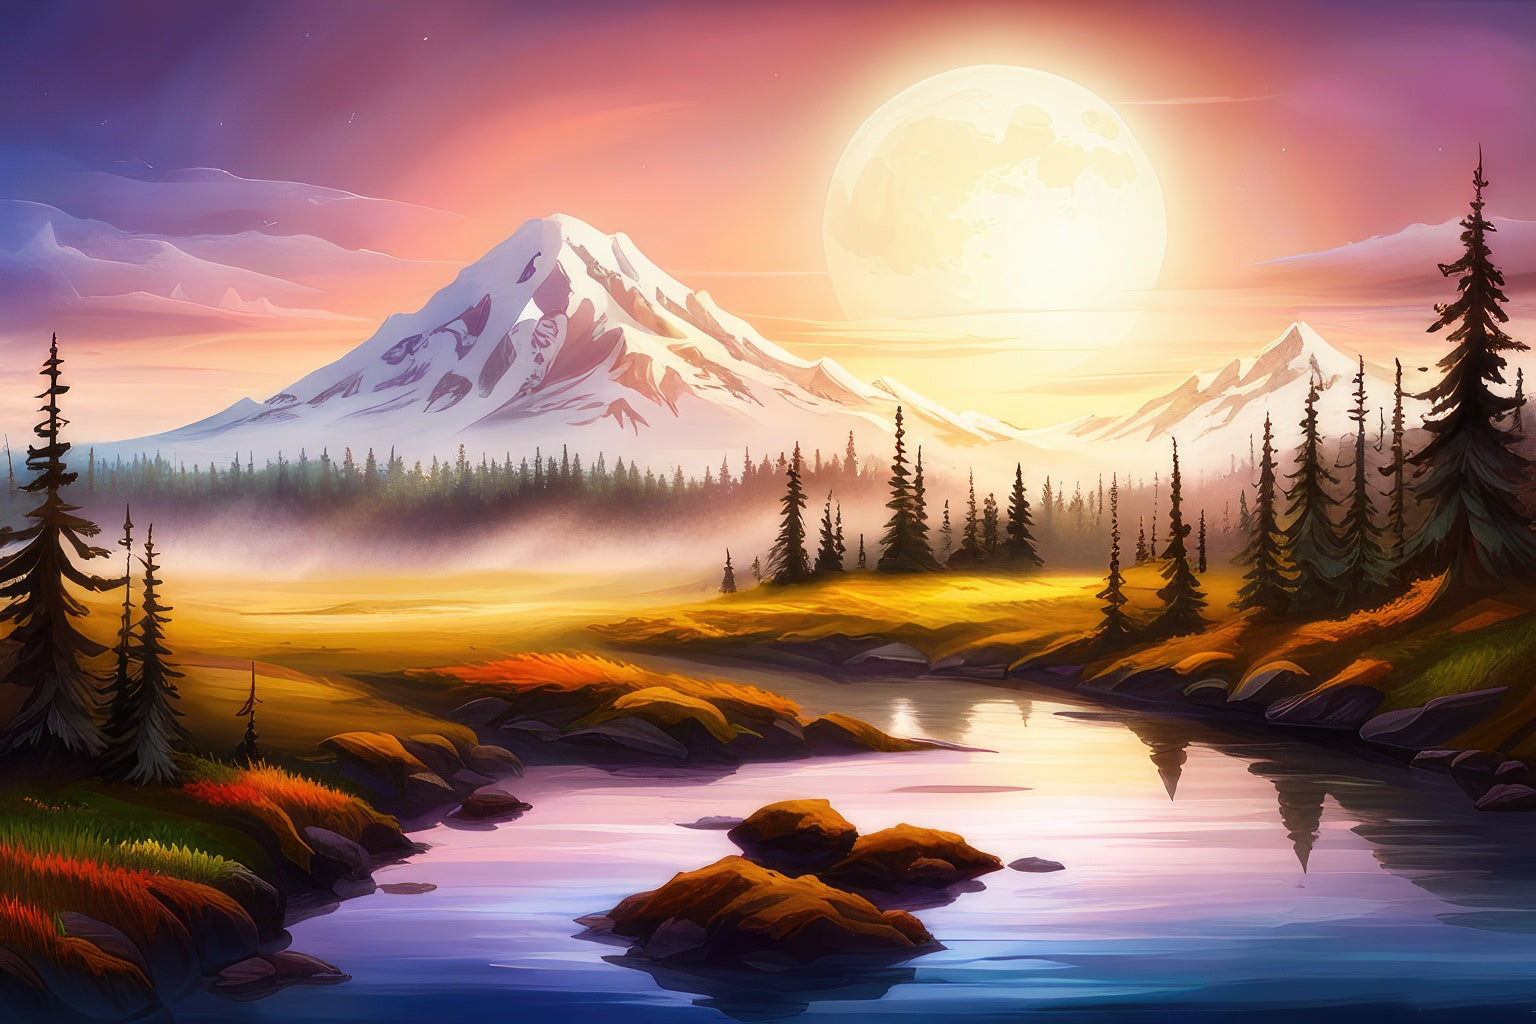 Mount Baker Scenic Landscape Digital Painting I Art Print